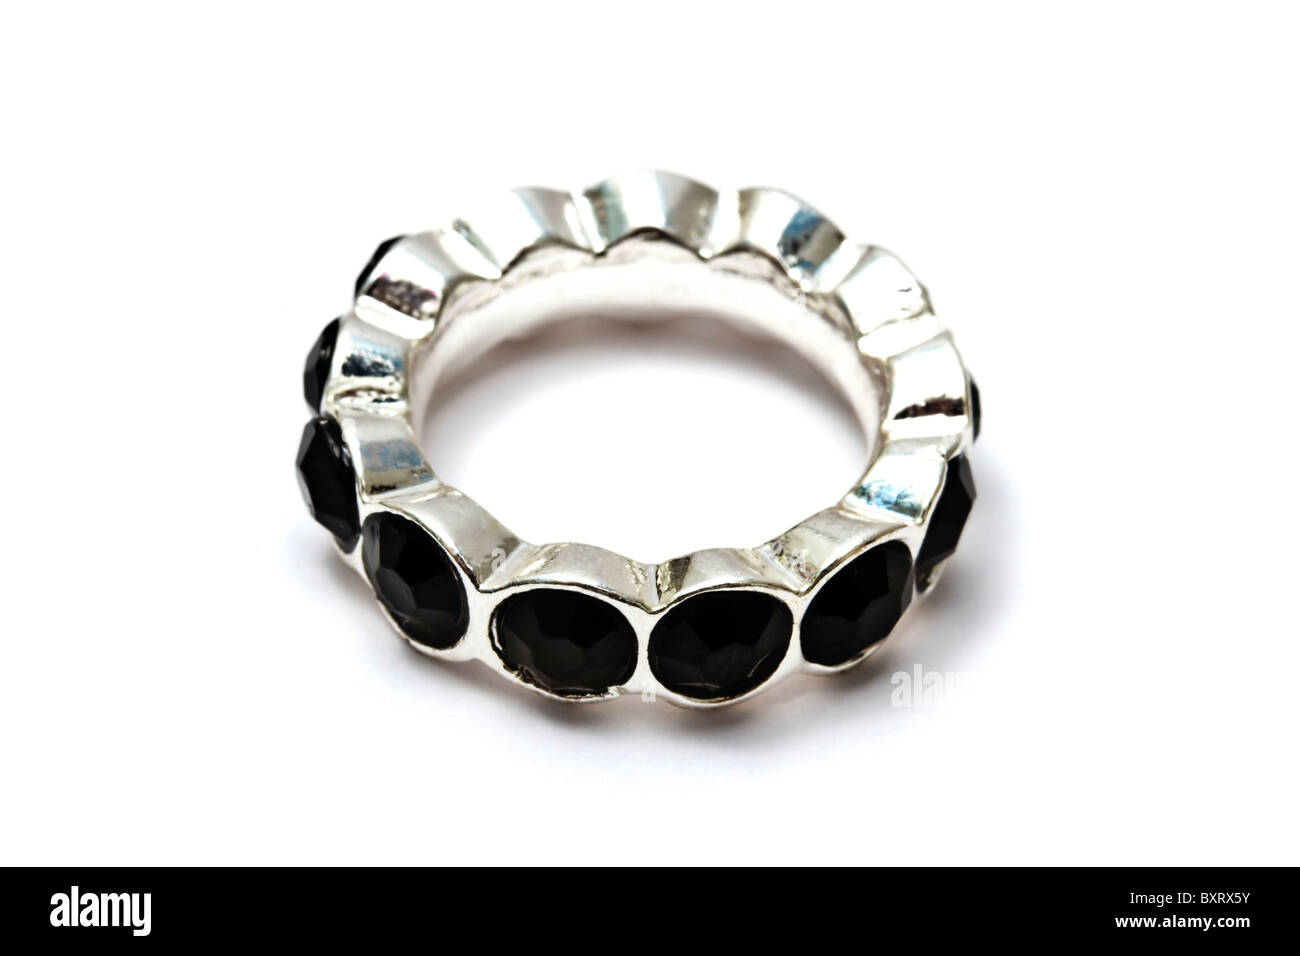 Fashion ring isolated on white background Stock Photo